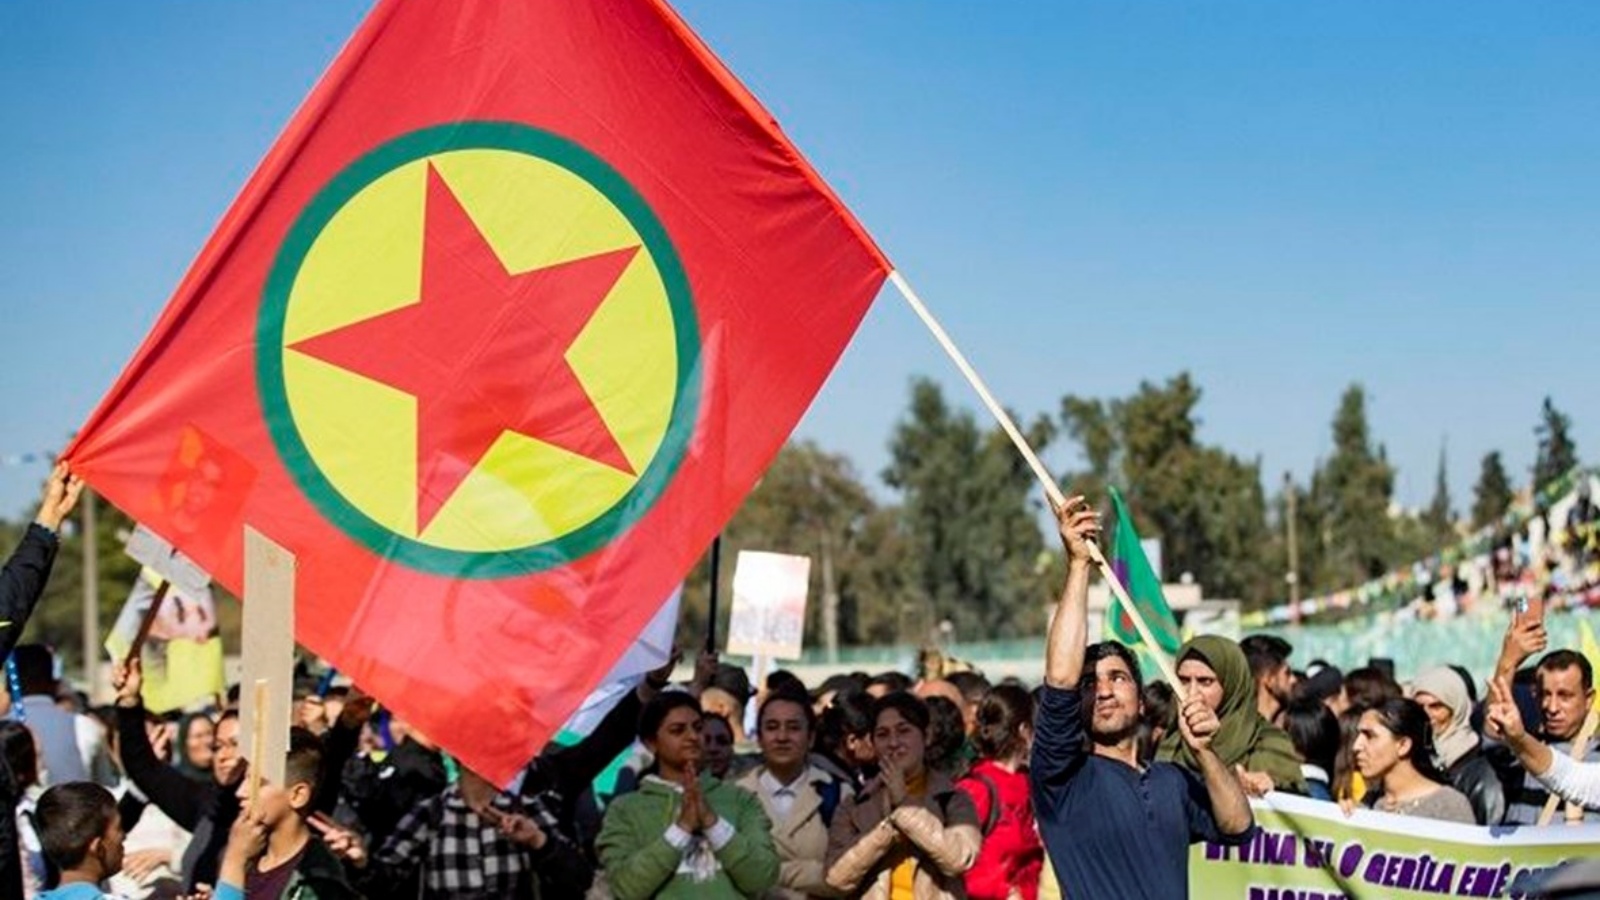 أكراد سوريون يتظاهرون ضد تركيا وتضامنًا مع حزب العمال الكردستاني في مدينة القامشلي الخاضعة للسيطرة الكردية